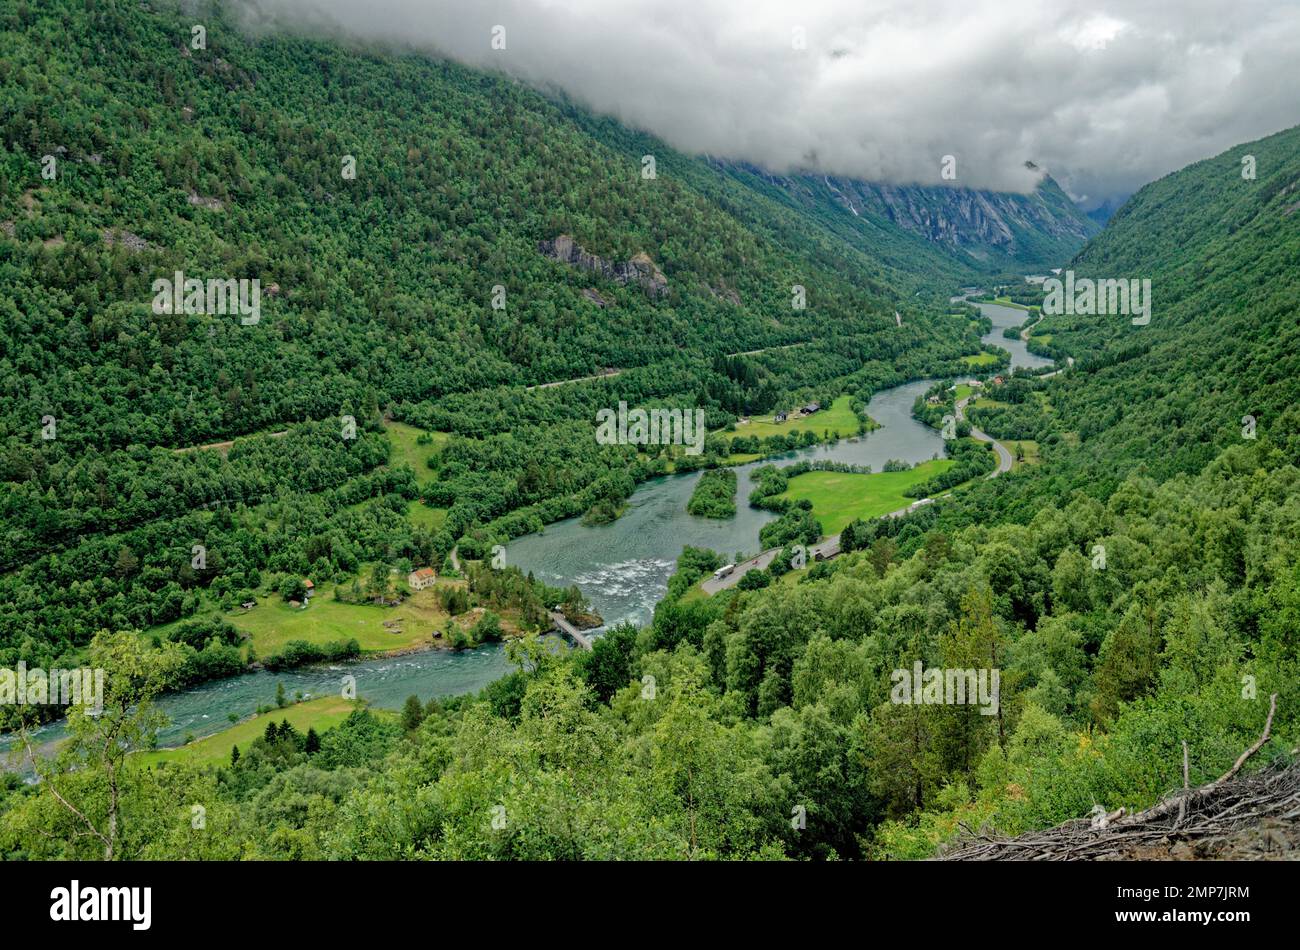 Magnifique paysage norvégien en été - Andalsnes - Norvège. 12.06.2012 Banque D'Images